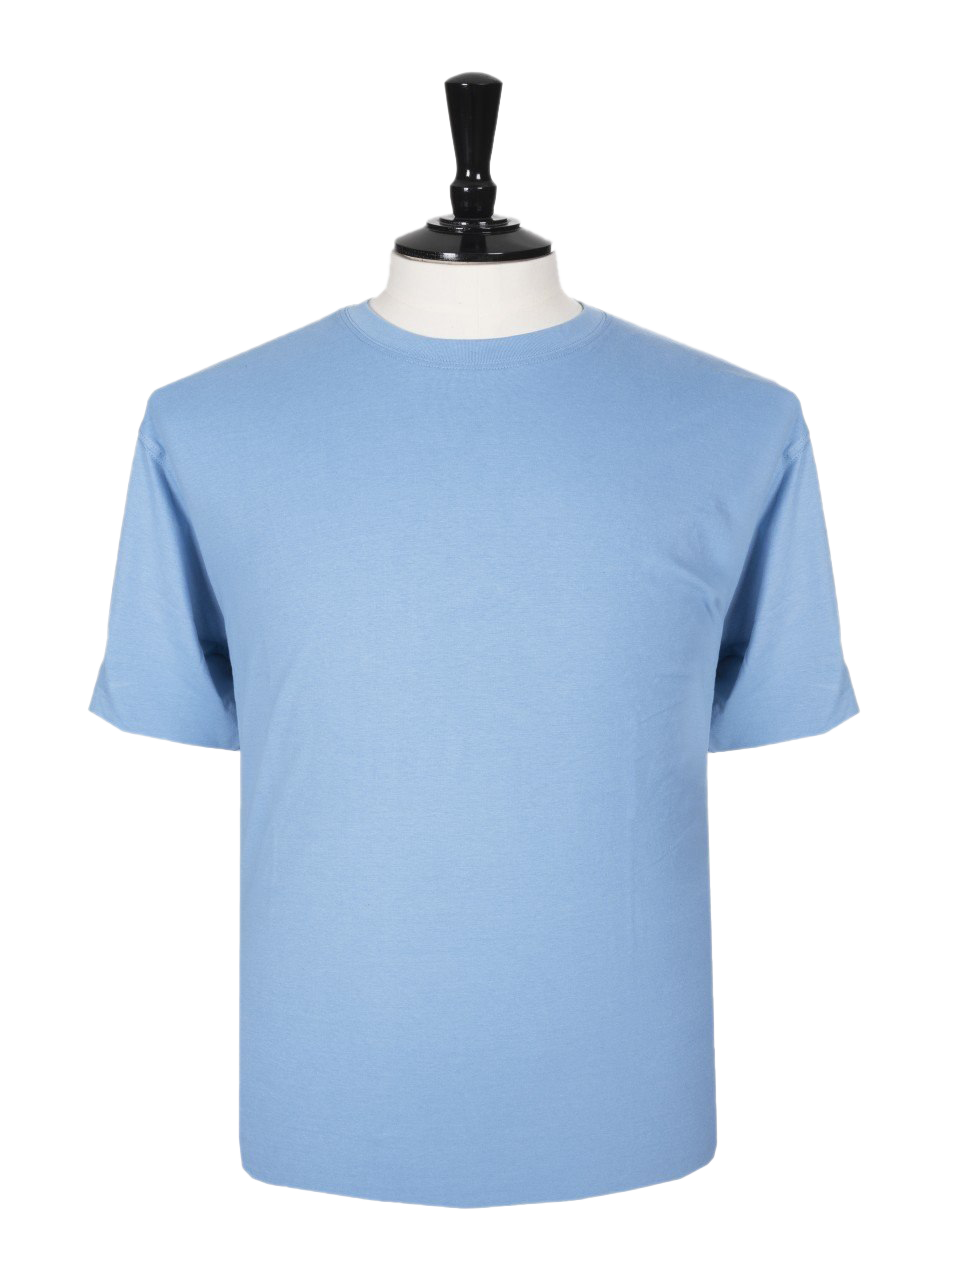 Plain Blue T-shirt Pic Pic